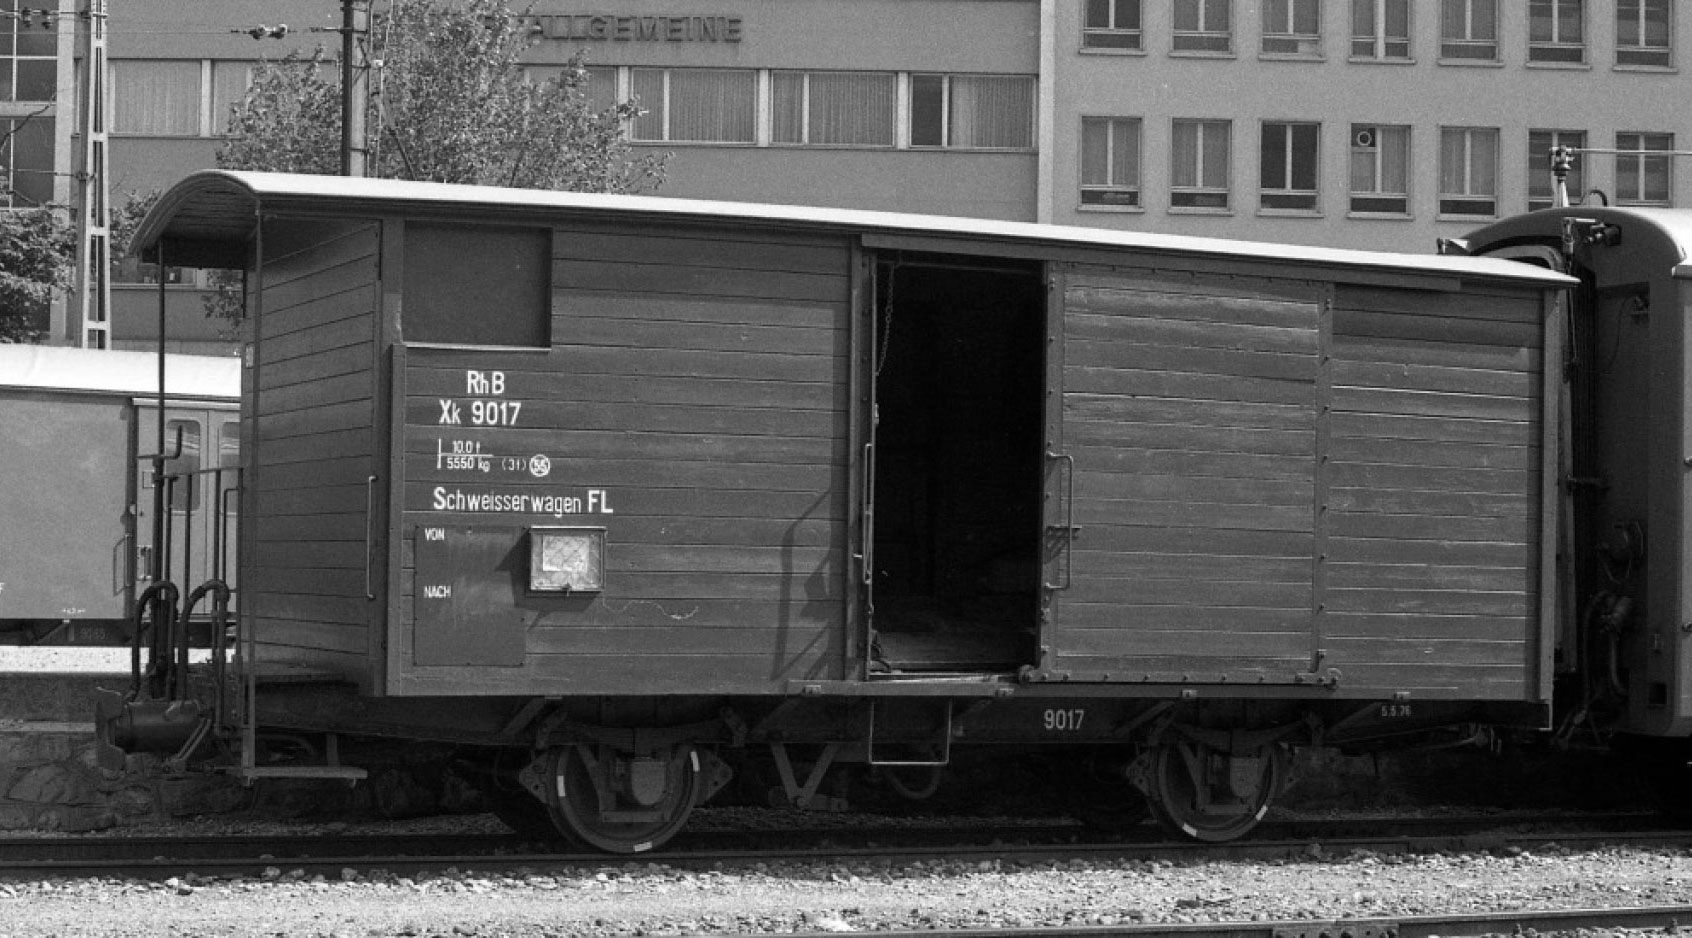 RhB Xk9017 gedeckt GüterWagen braun, Schweisserwagen FL im Zustand der 1970iger Jahre